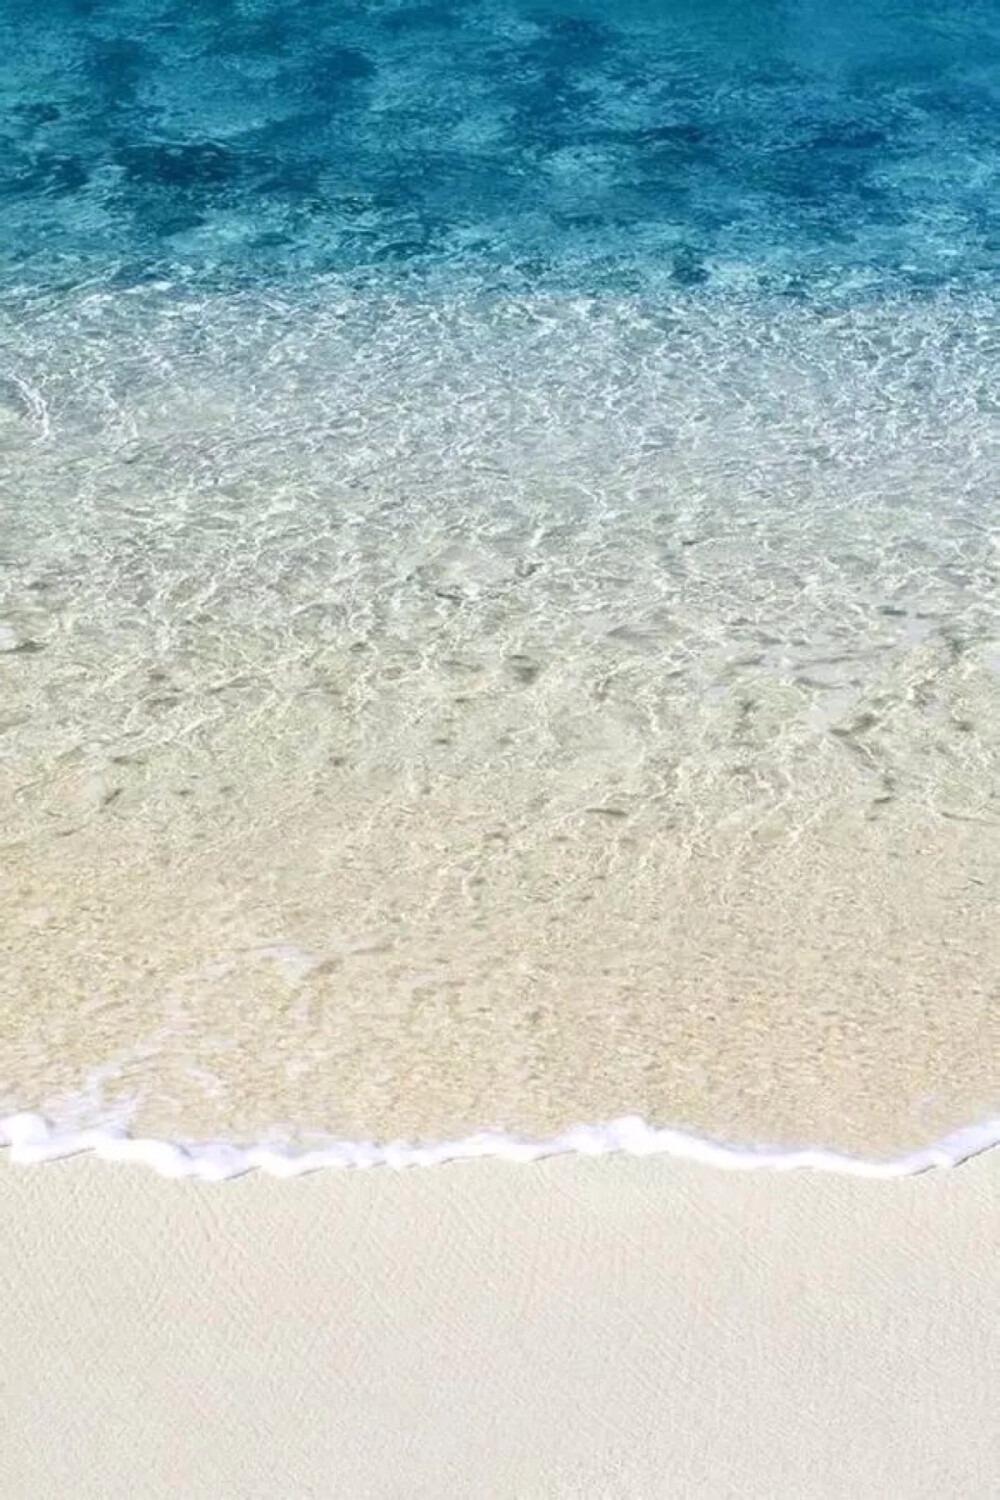 唯美沙滩 清澈见底 海洋 自然风光 风景 旅游胜地 唯美壁纸 iPhone 壁纸 锁屏